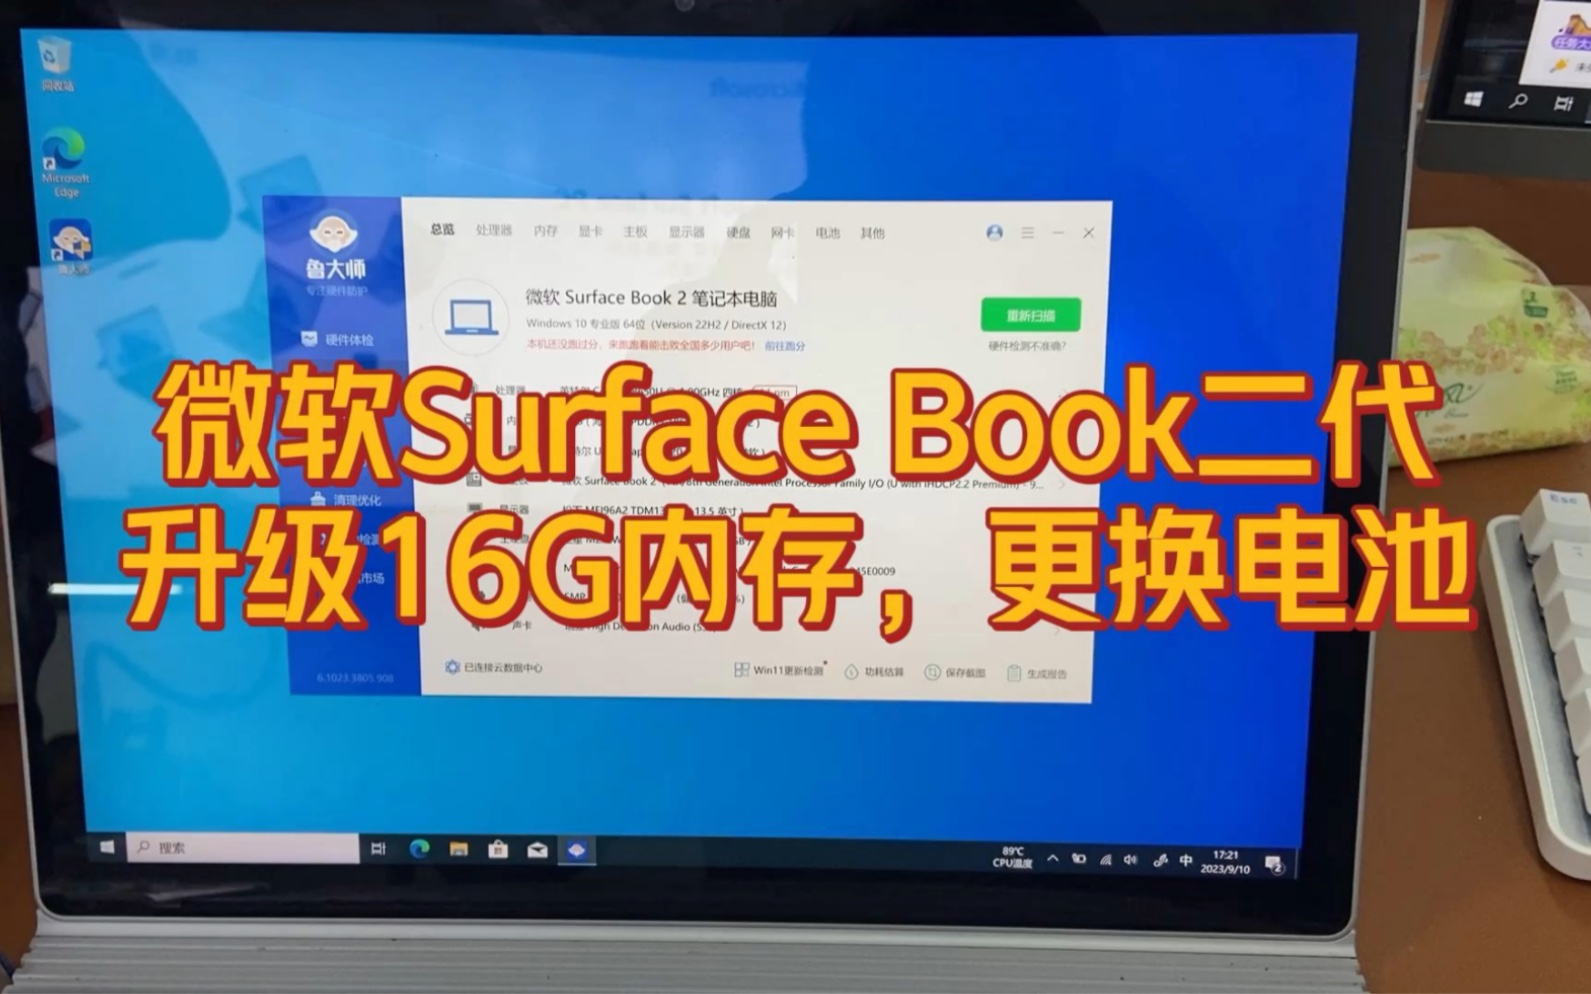 微软Surface Book 2升级16G内存，更换底座电池和接口，小小改造提升明显。